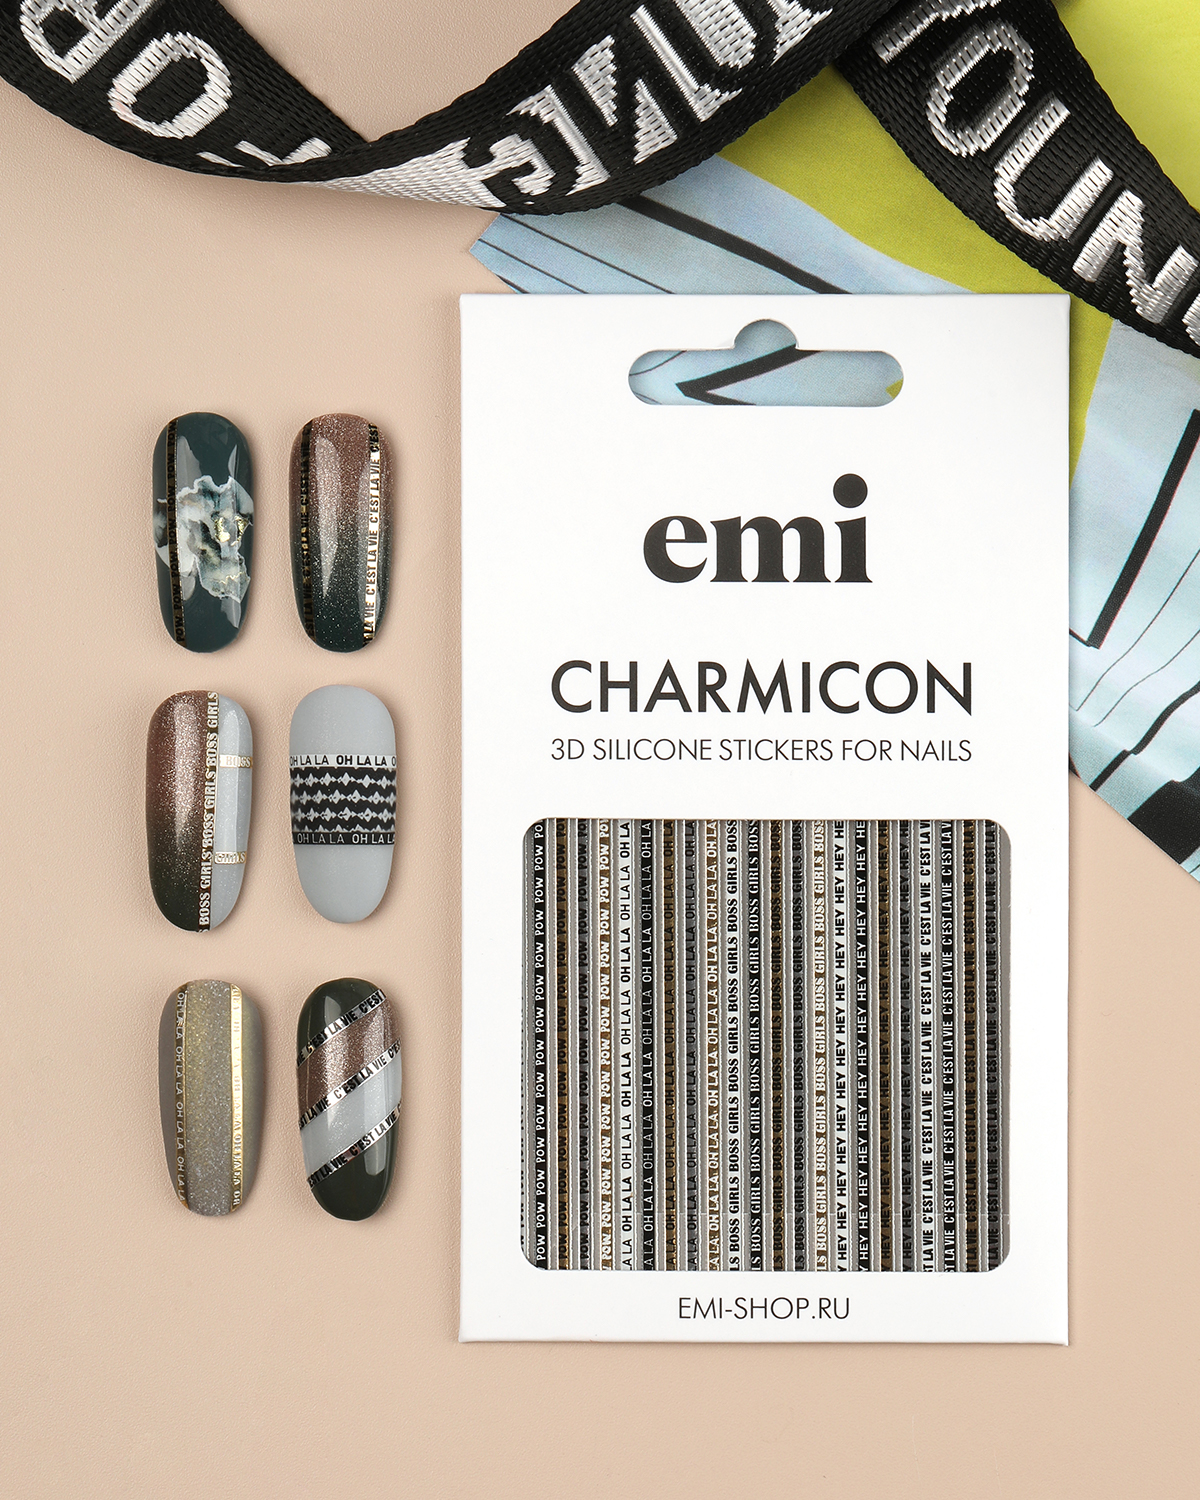 Объемные наклейки для дизайна ногтей EMi Charmicon 3D Silicone Stickers №244 Oh la la наклейки объемные зверята и звёздочки